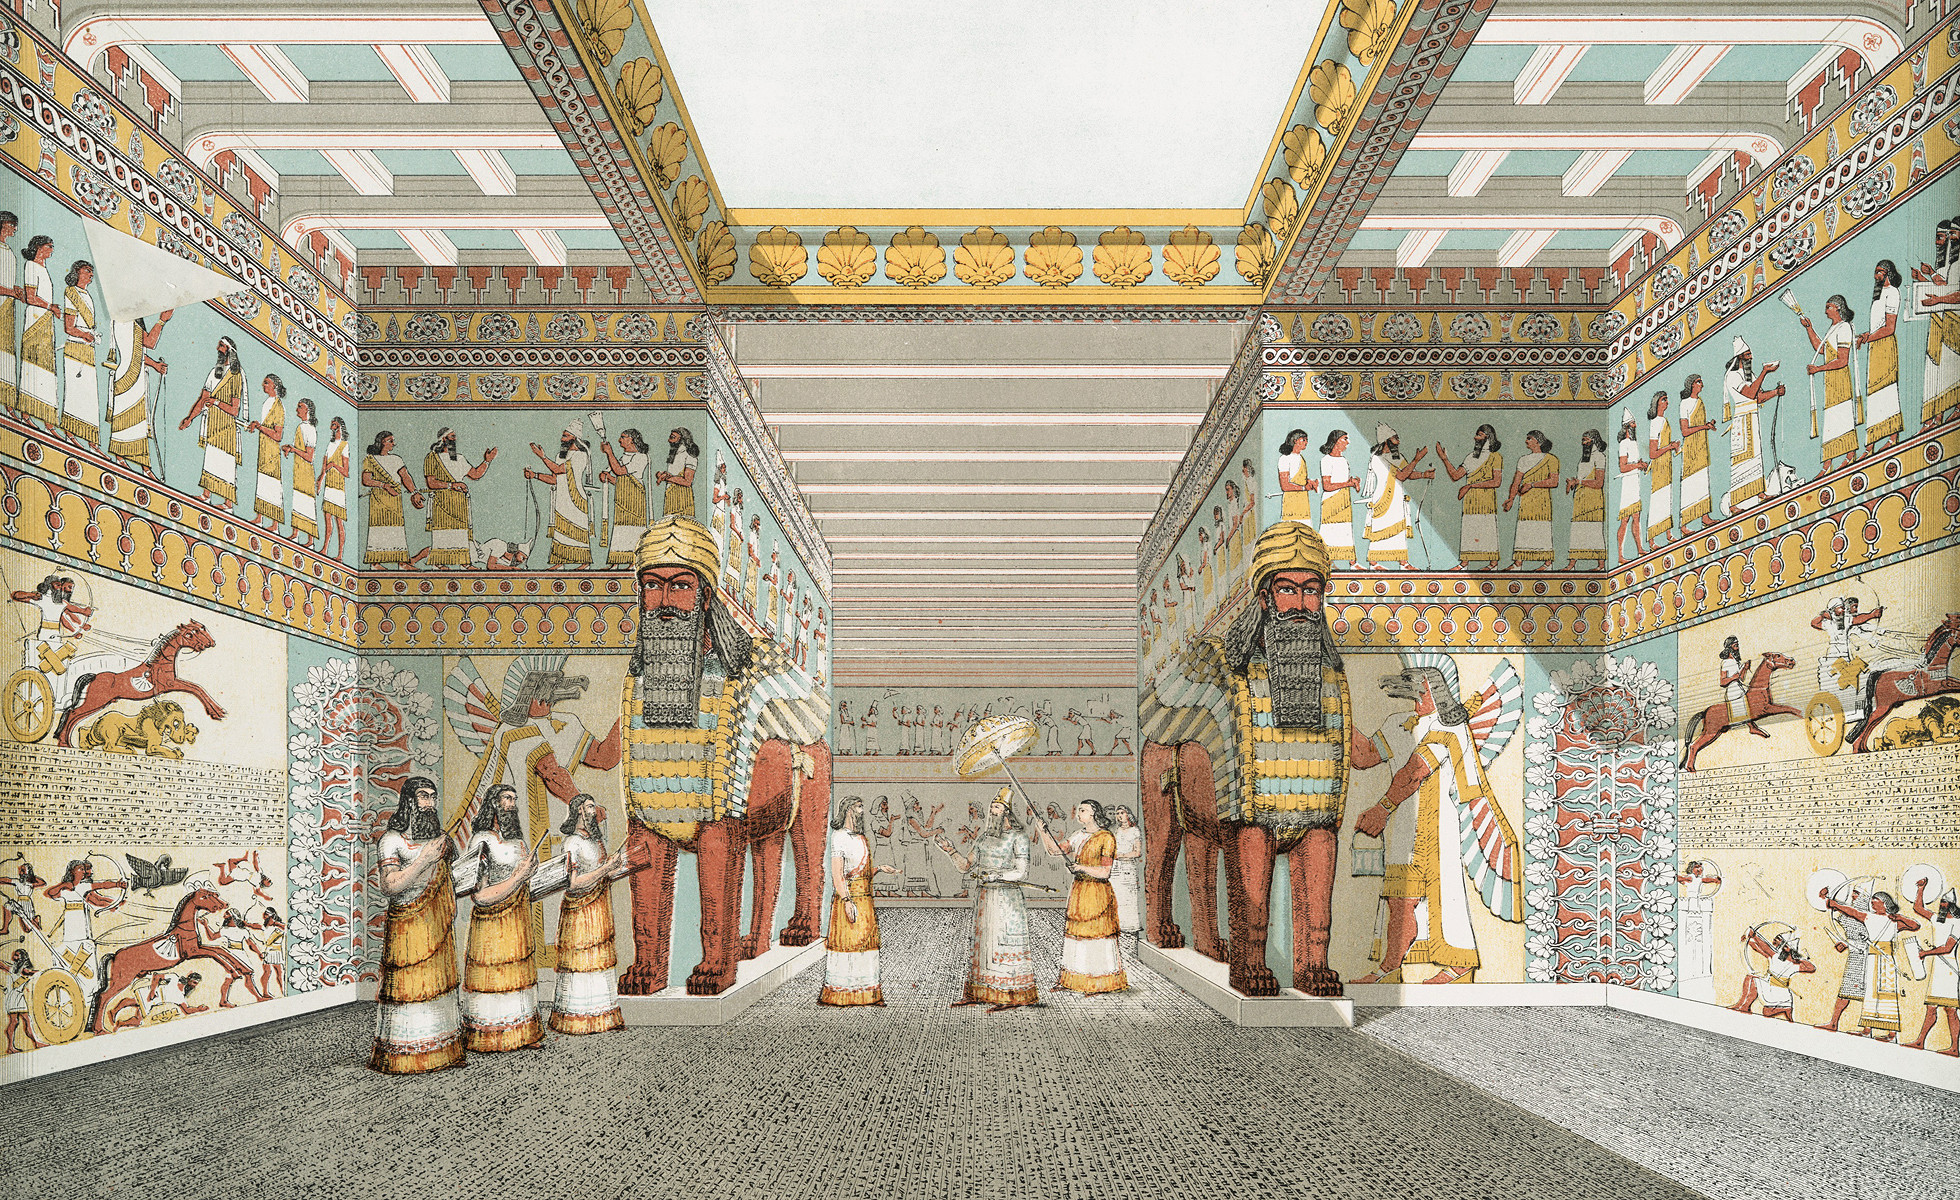 Изображение зала в ассирийском дворце из книги «Памятники Ниневии» сэра Остина Генри Лейарда, 1853